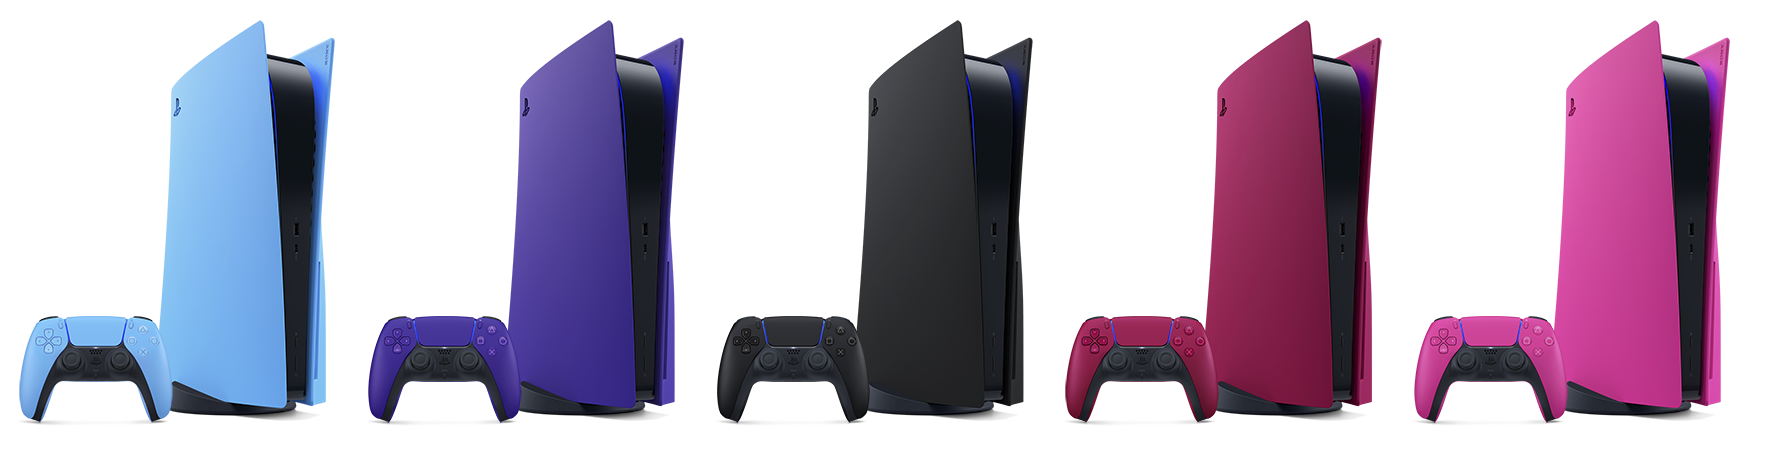 五种不同颜色的PS5主机盖